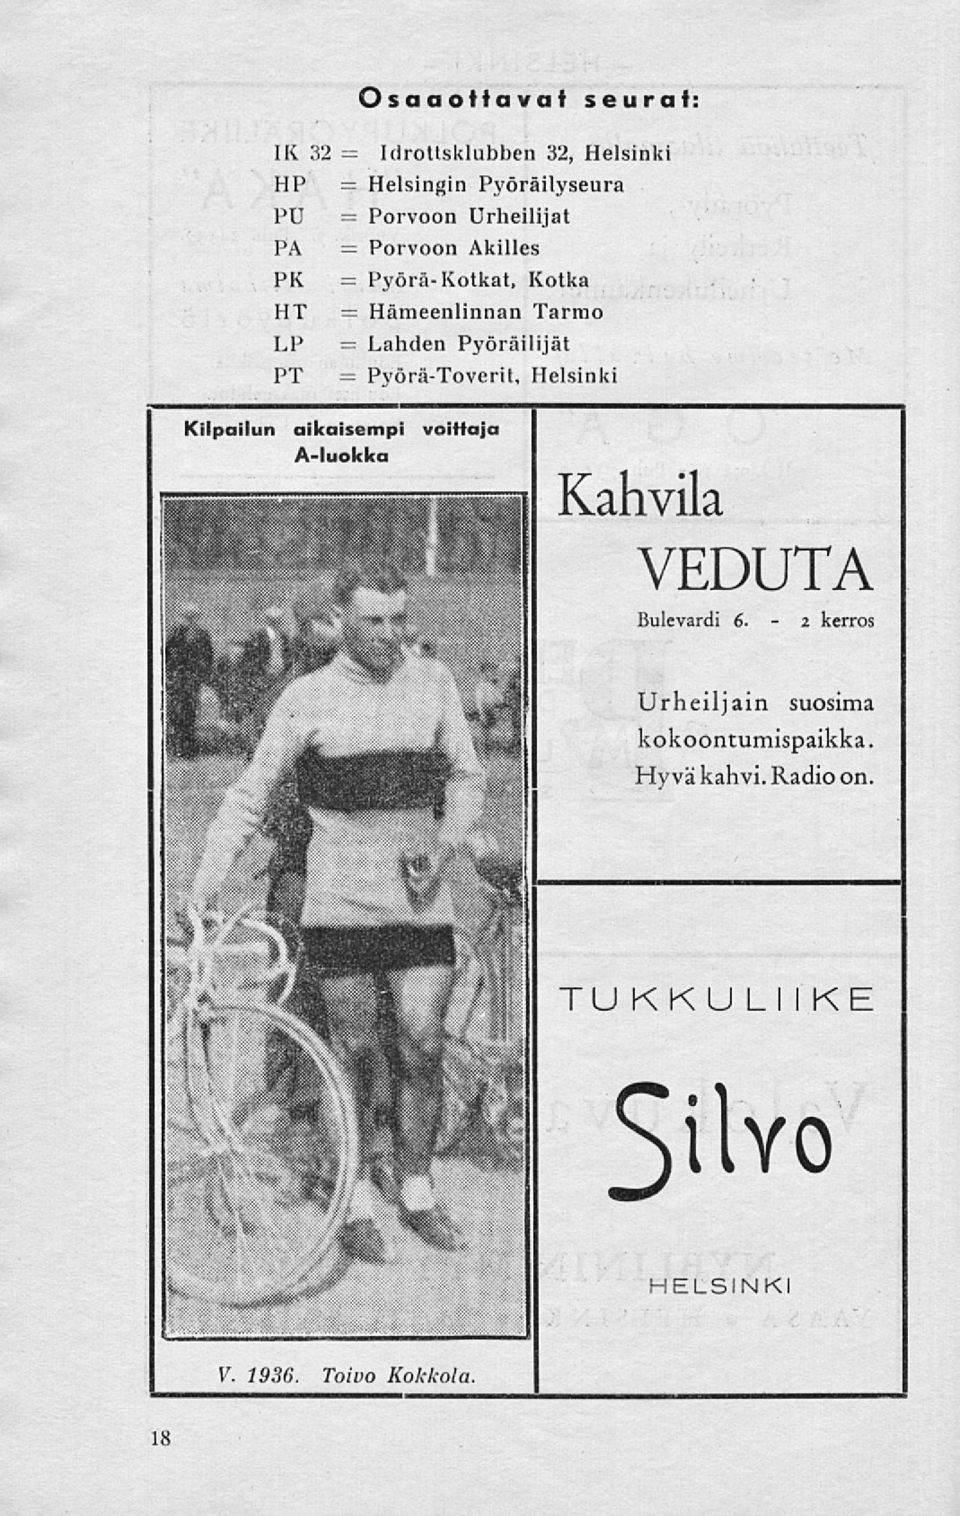 Pyörä-Toverit, Helsinki Kilpailun aikaisempi voittaja A-luokka Kahvila VEDUTA Bulevardi 6.